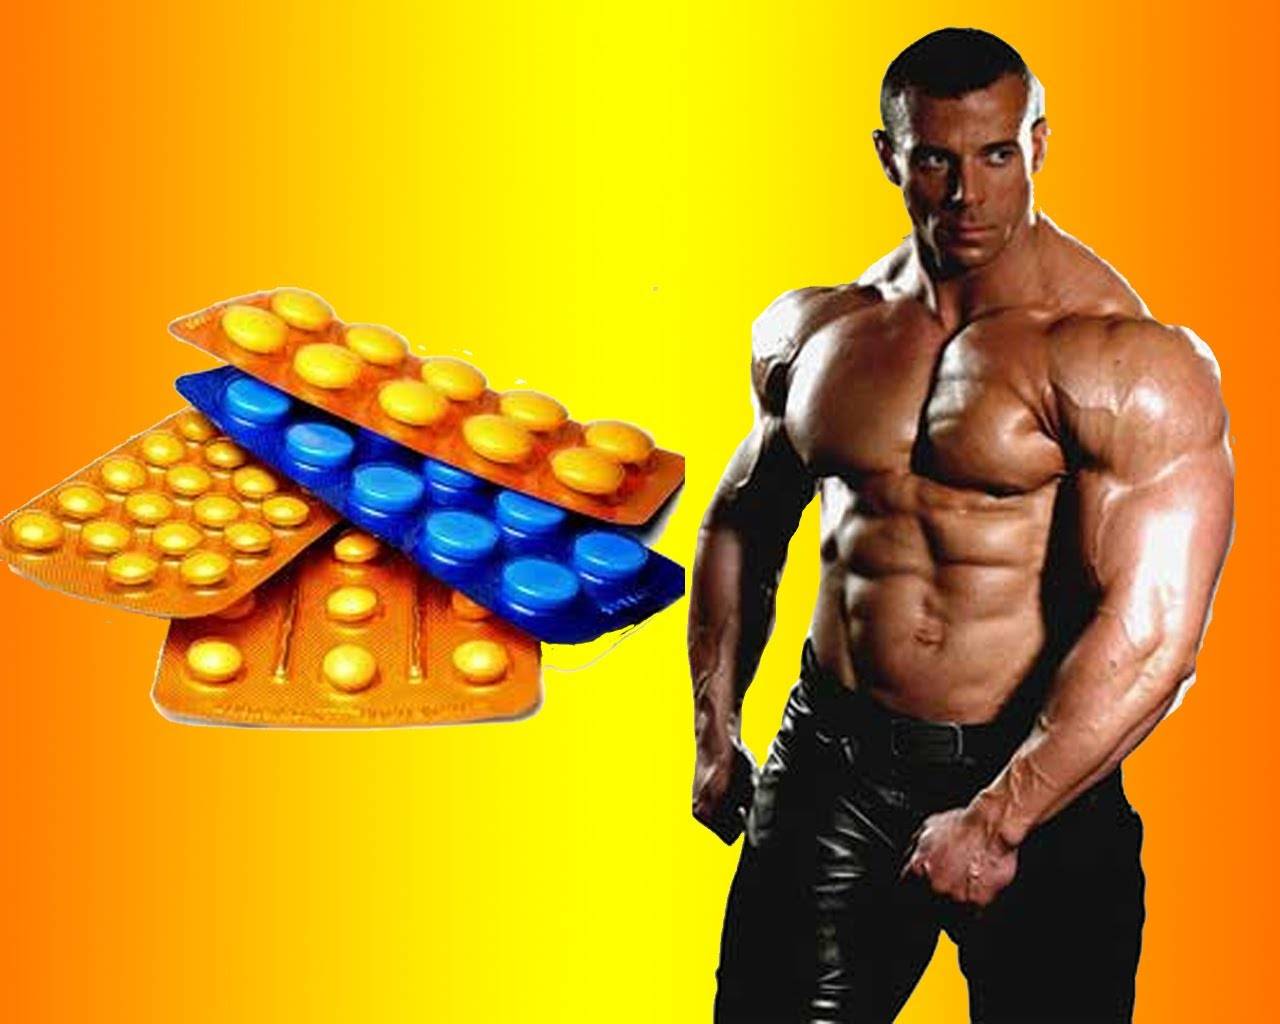 На вопрос спортсмен приобрел спортивное питание. Анаболические стероиды. Анаболические стероиды (анаболики). Таблетки для качков. Спортивное питание стероиды.